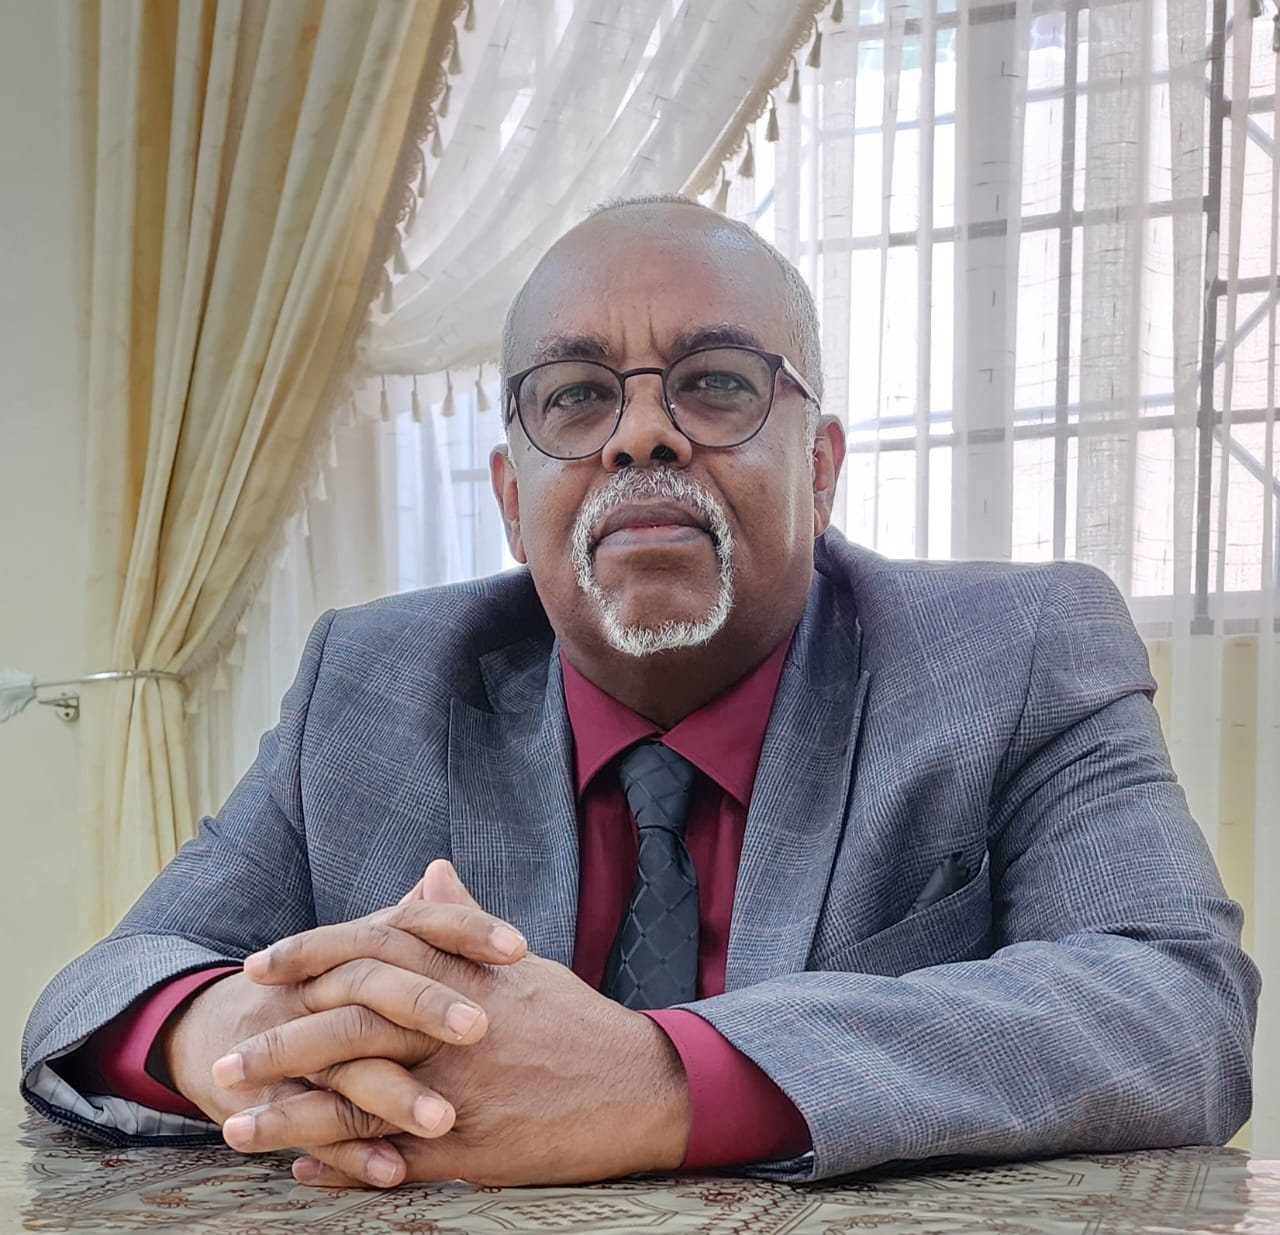 Dr. Abdirahman Ali Mohamed